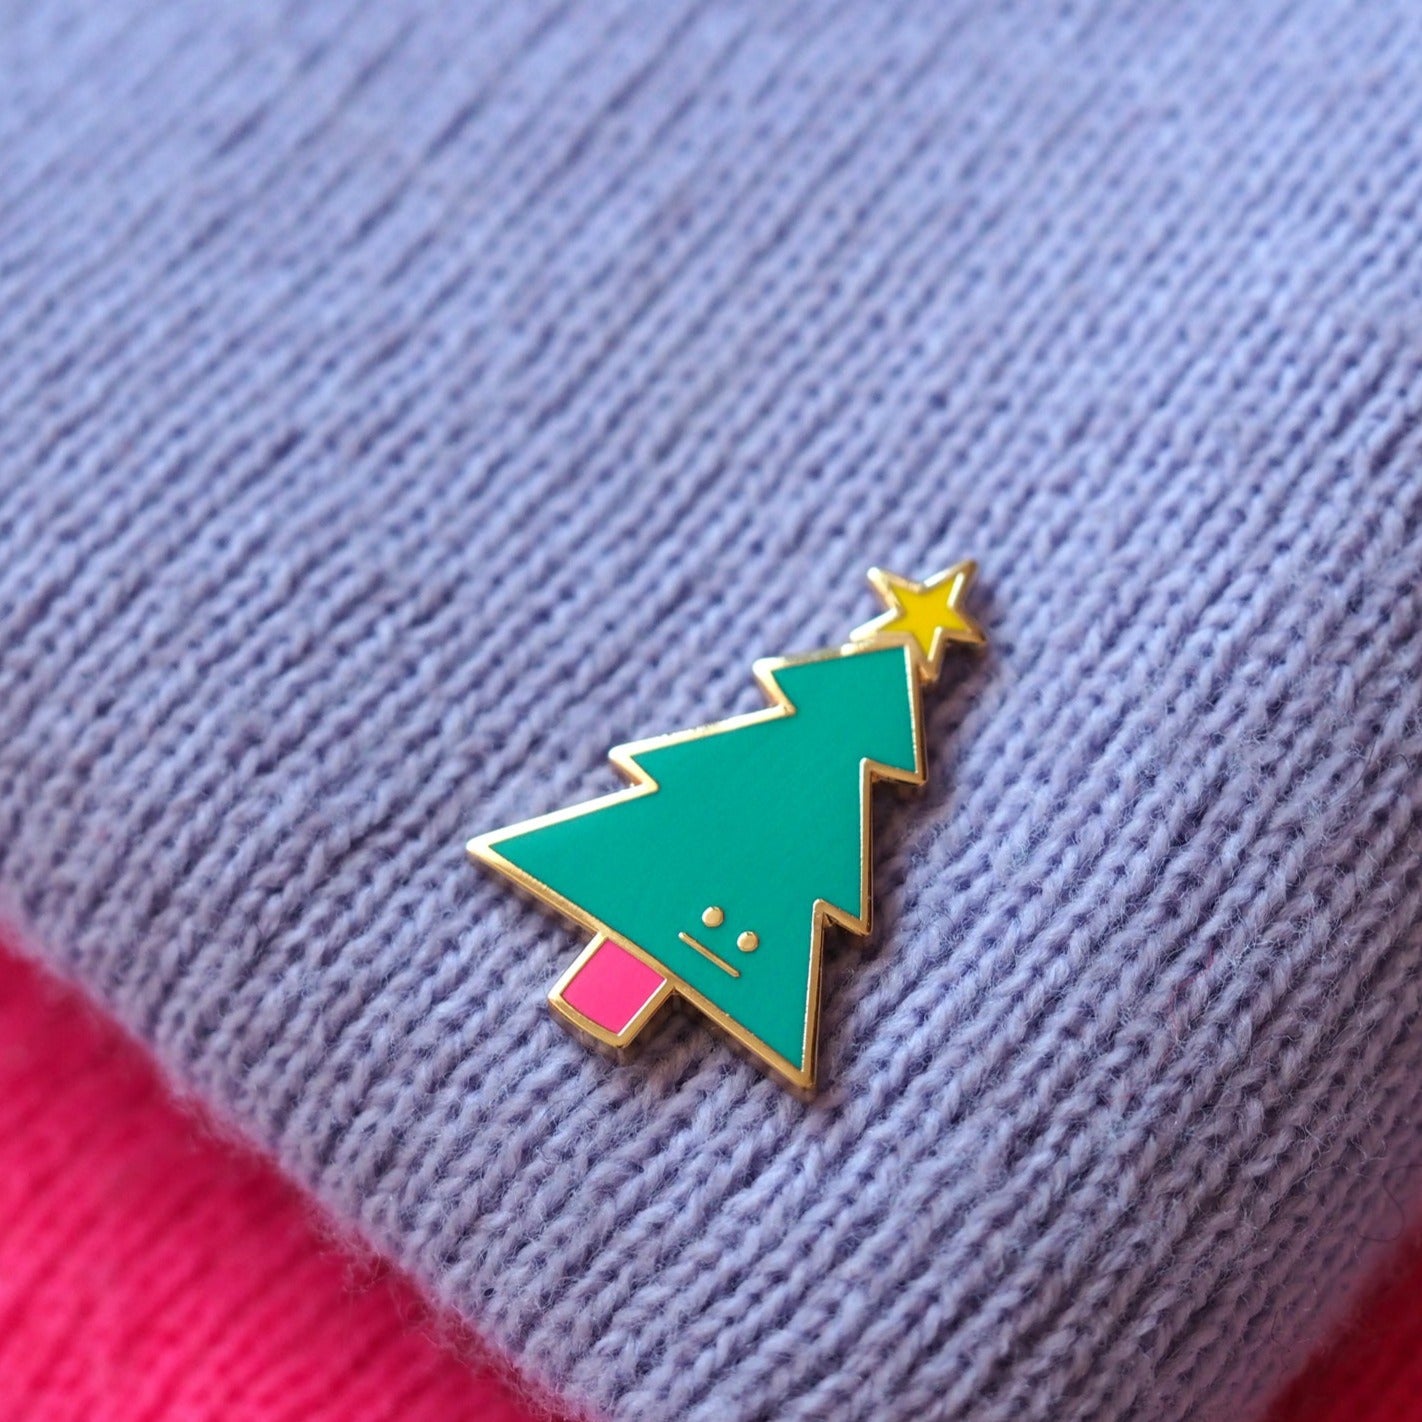 Christmas Tree Enamel Pin